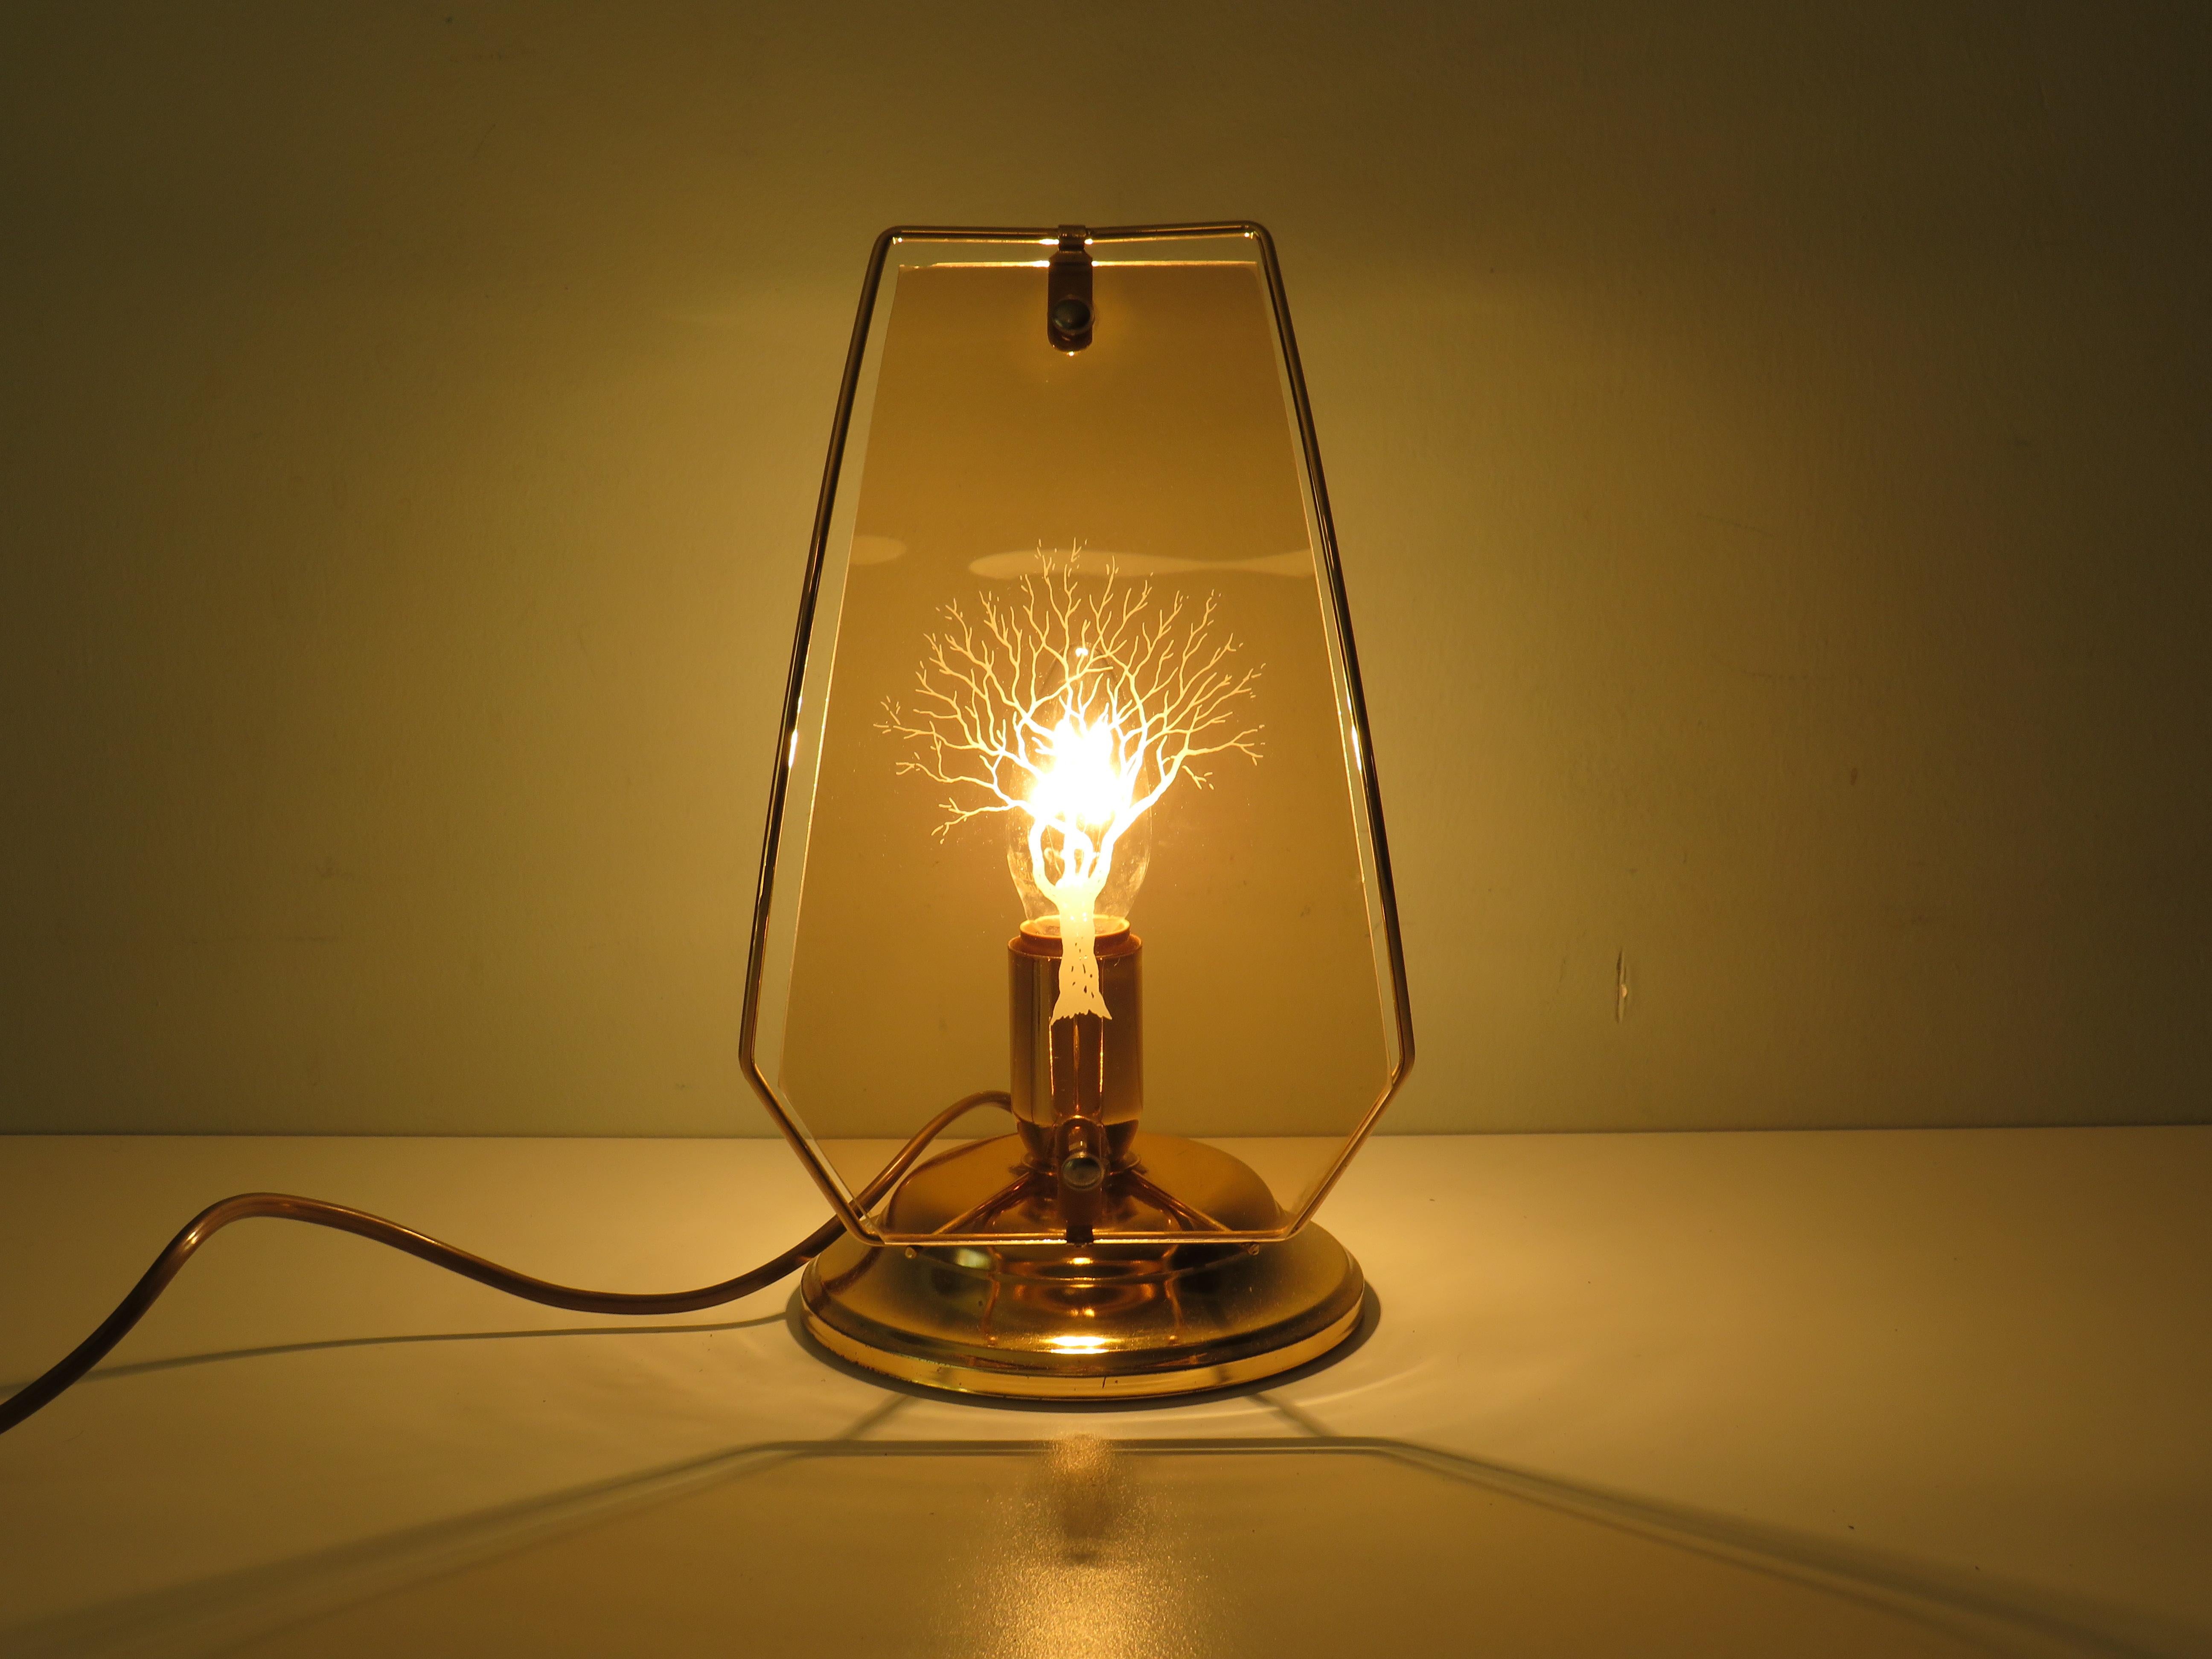 Lampes de table de chevet produites par Lakro, Pays-Bas, années 1970.
Les lampes ont une structure en métal de couleur dorée et un écran en verre à fumée. Un dessin stylisé d'un arbre est gravé sur l'écran.
La lampe est à la fois équipée d'un